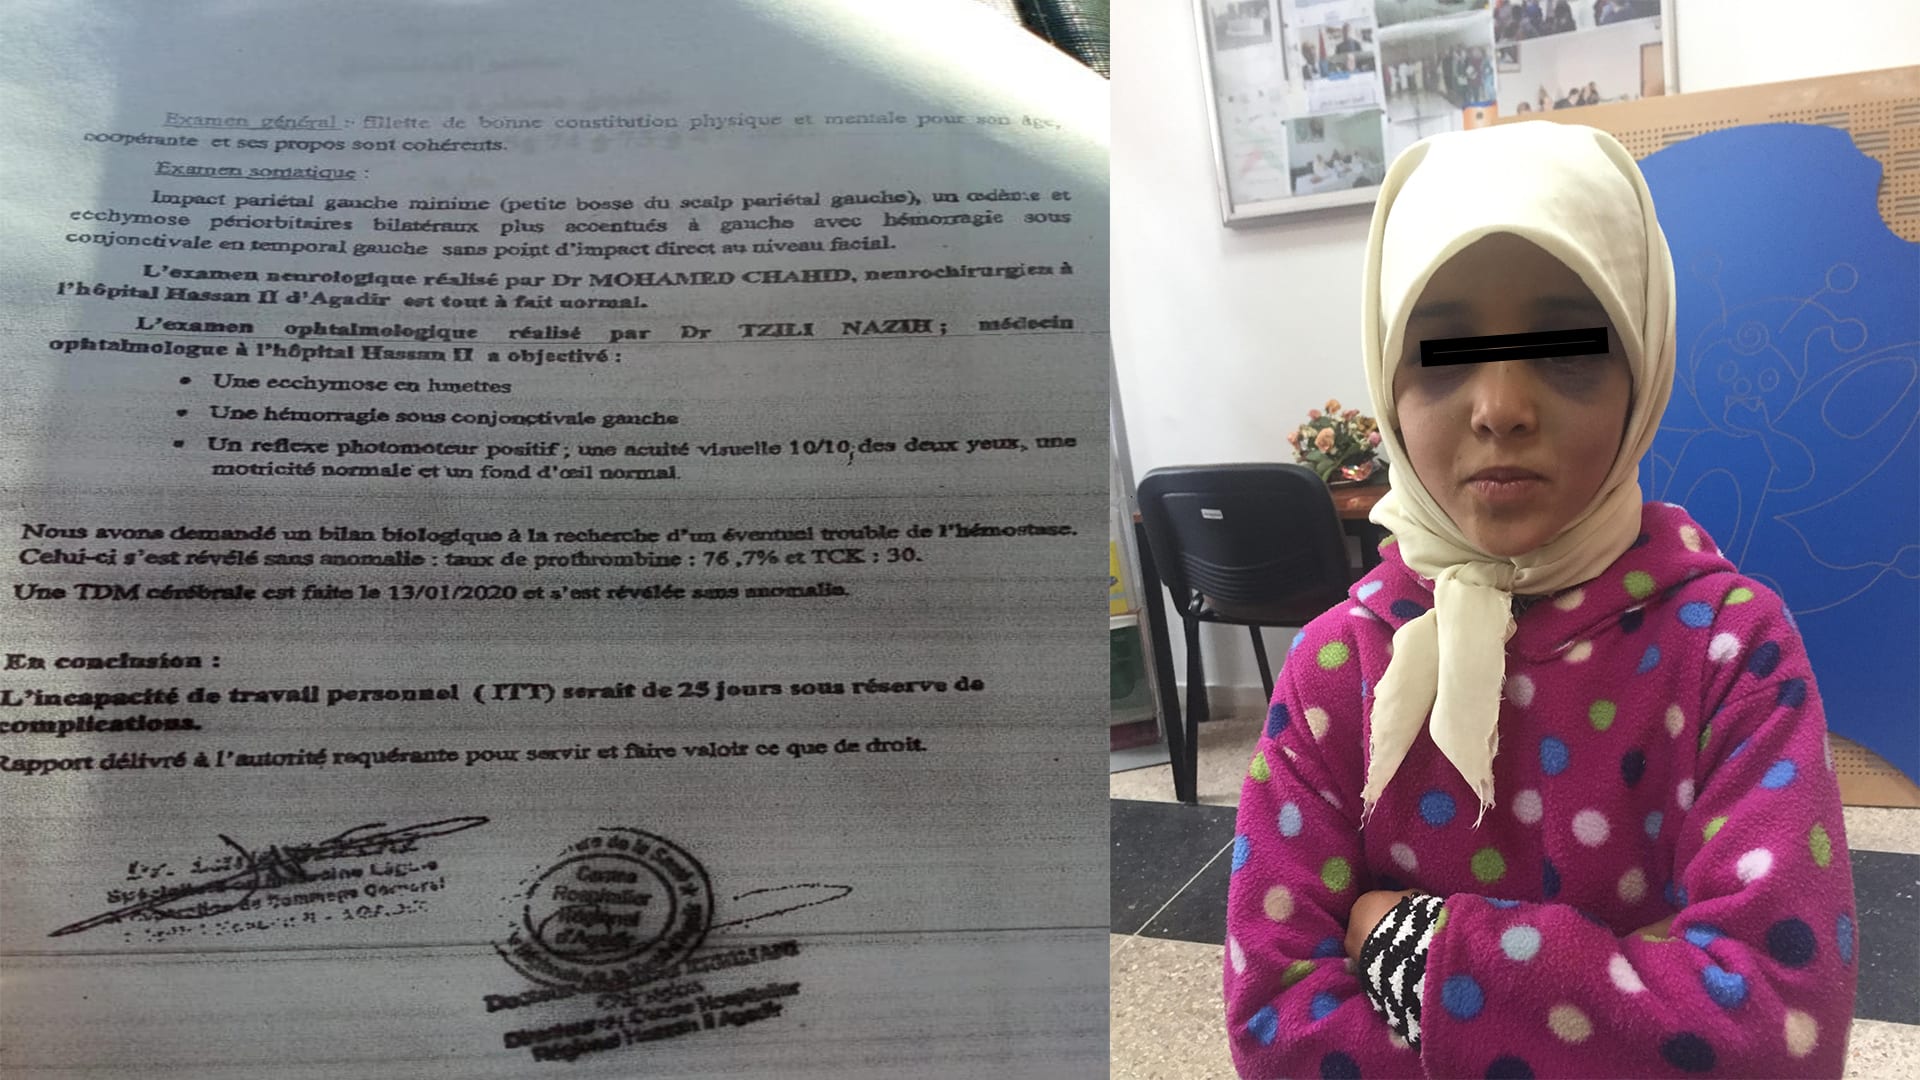 “الأمازيغية” وشهادة طبية بالفرنسية تؤجّلان محاكمة معلّم تارودانت 